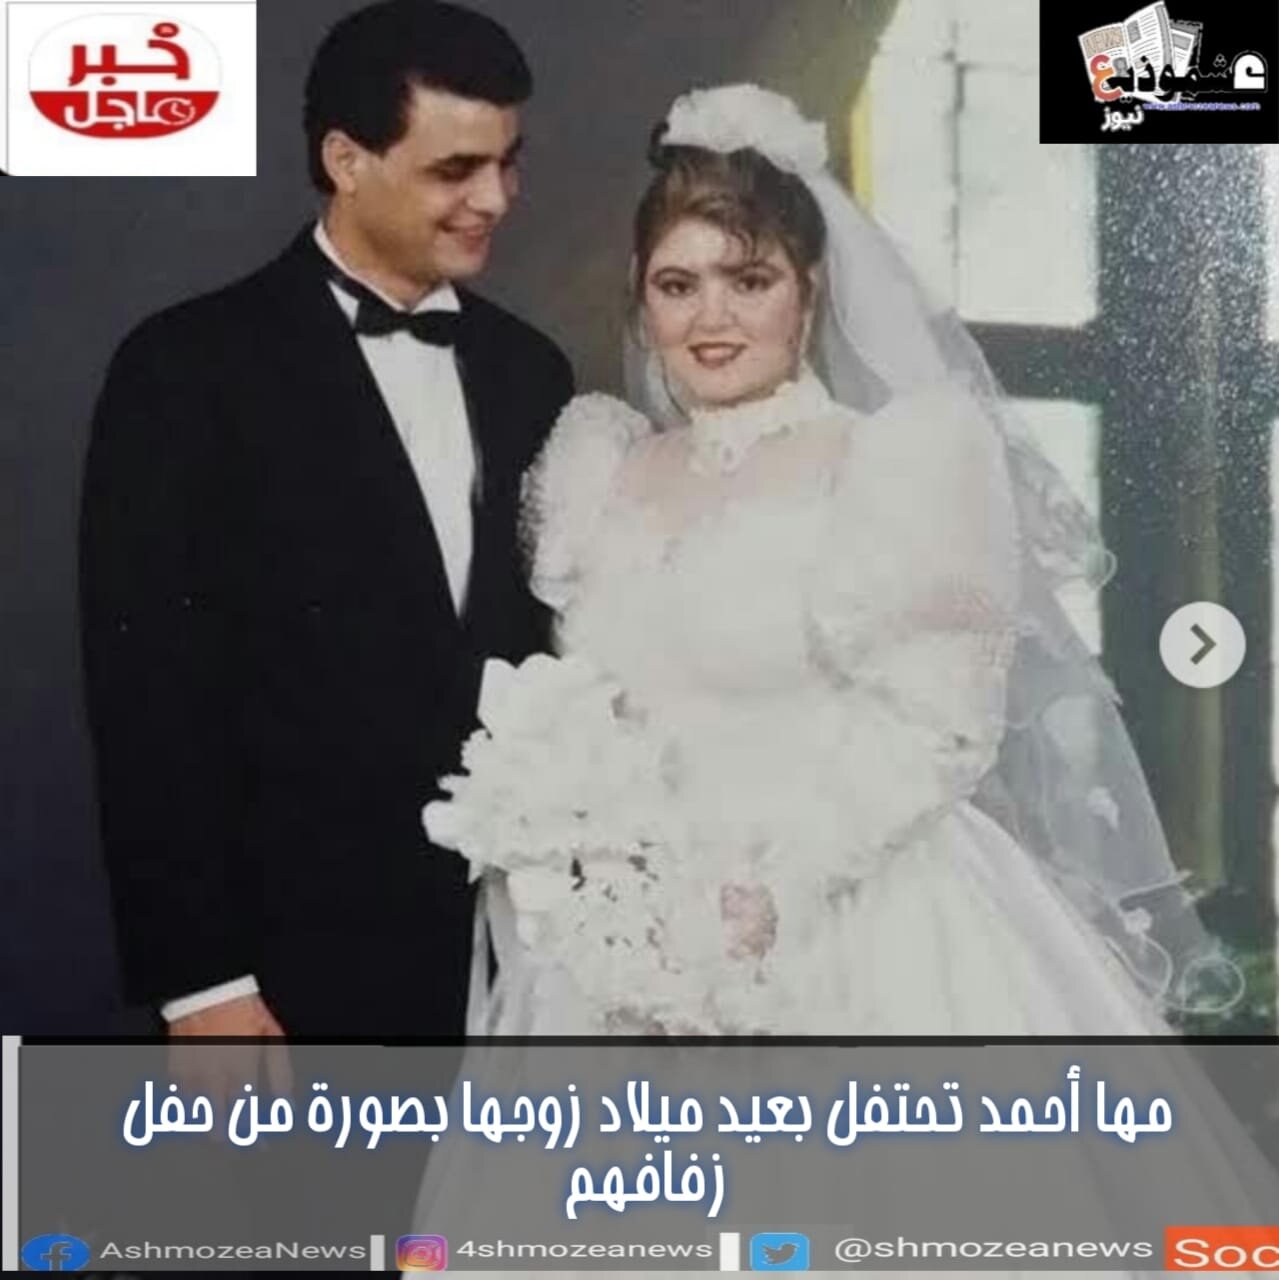 مها أحمد تحتفل بعيد ميلاد زوجها بصورة من حفل زفافهم